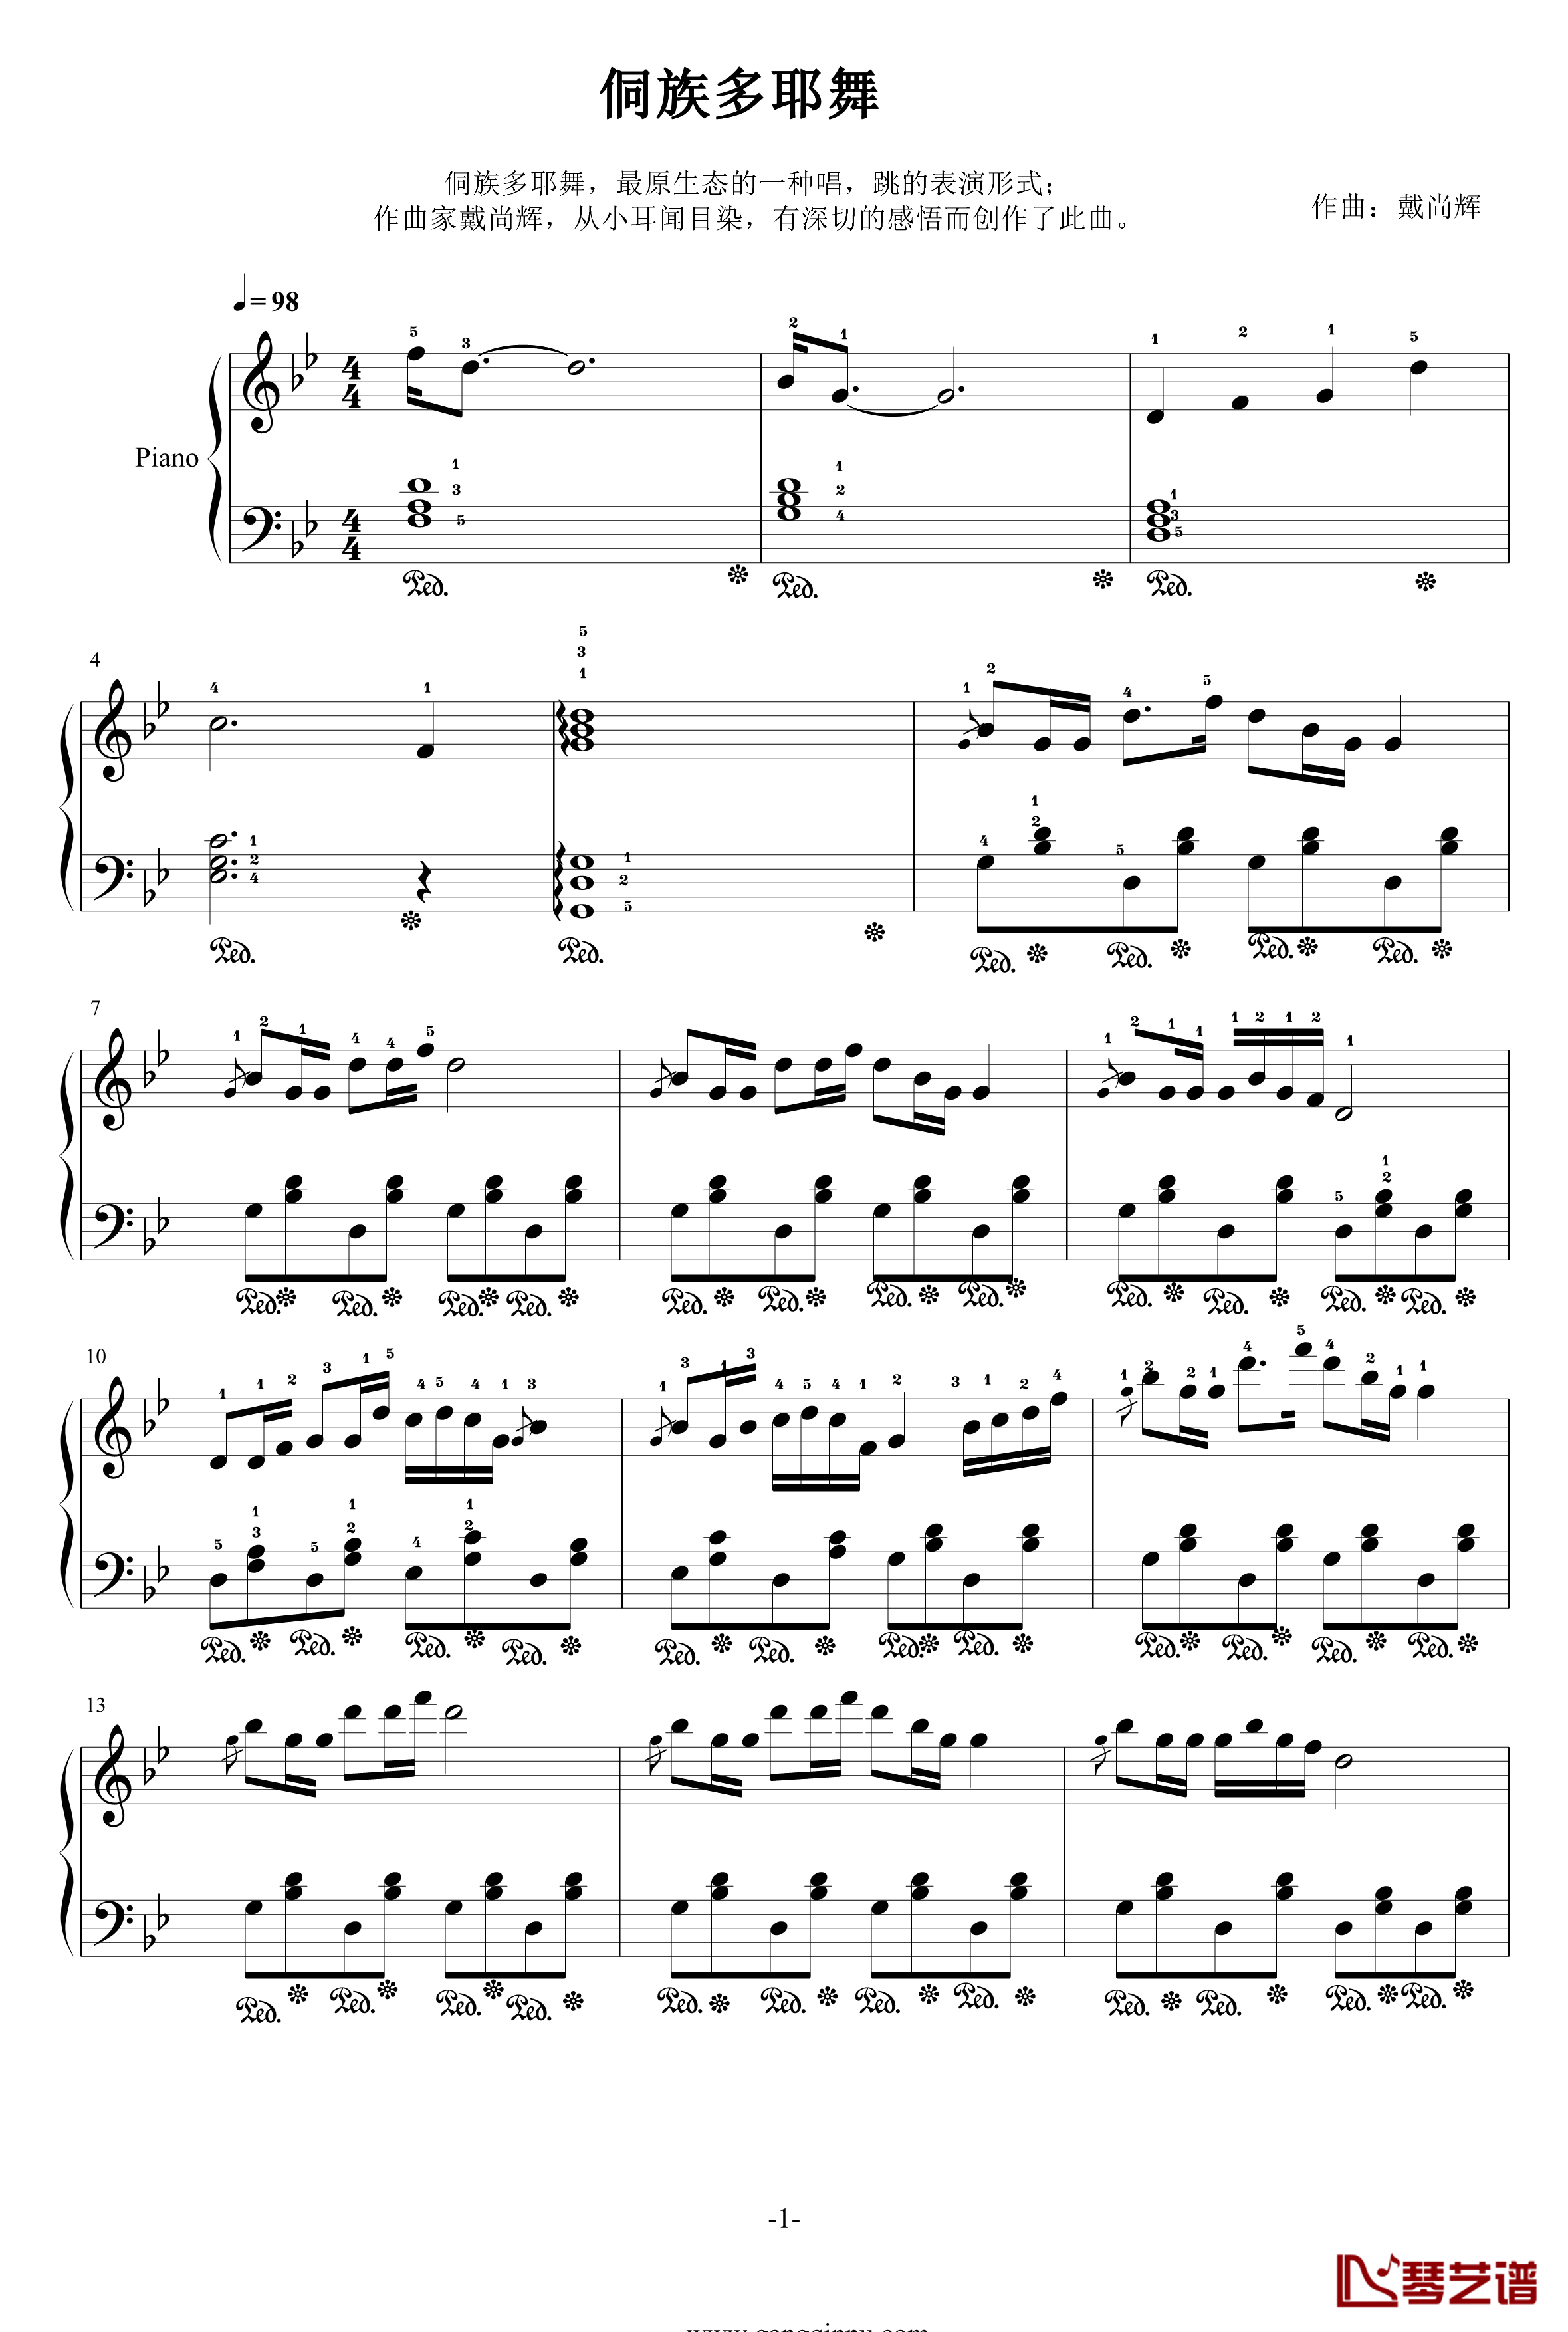 侗族多耶舞钢琴谱-戴尚辉-修改版1